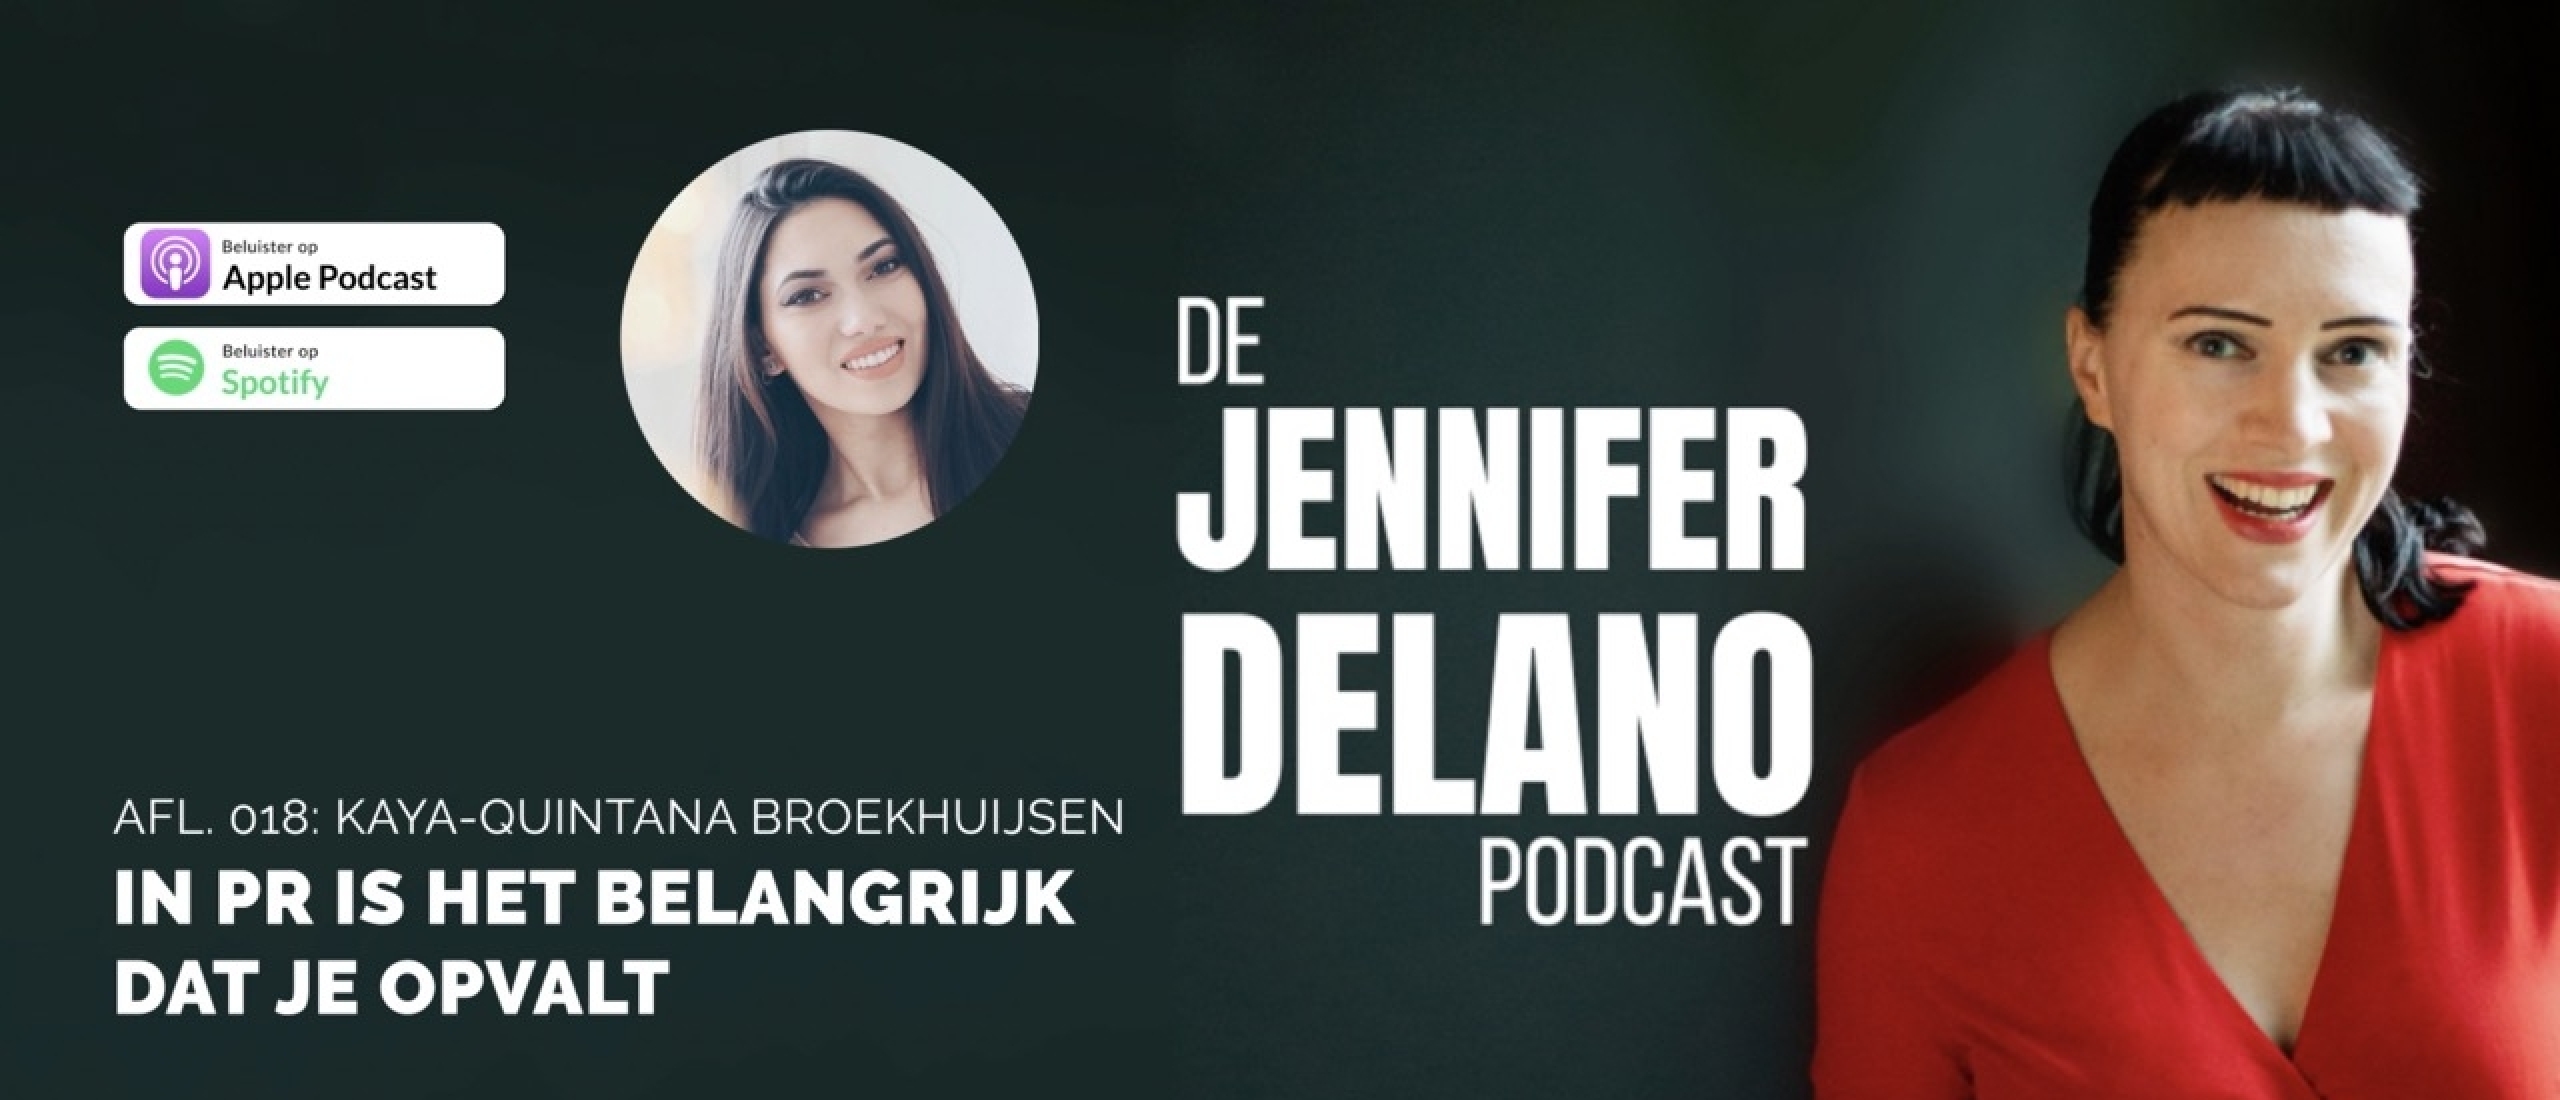 In PR is het belangrijk dat je opvalt - De Jennifer Delano Podcast Afl. 018 met Kaya-Quintana Broekhuijsen